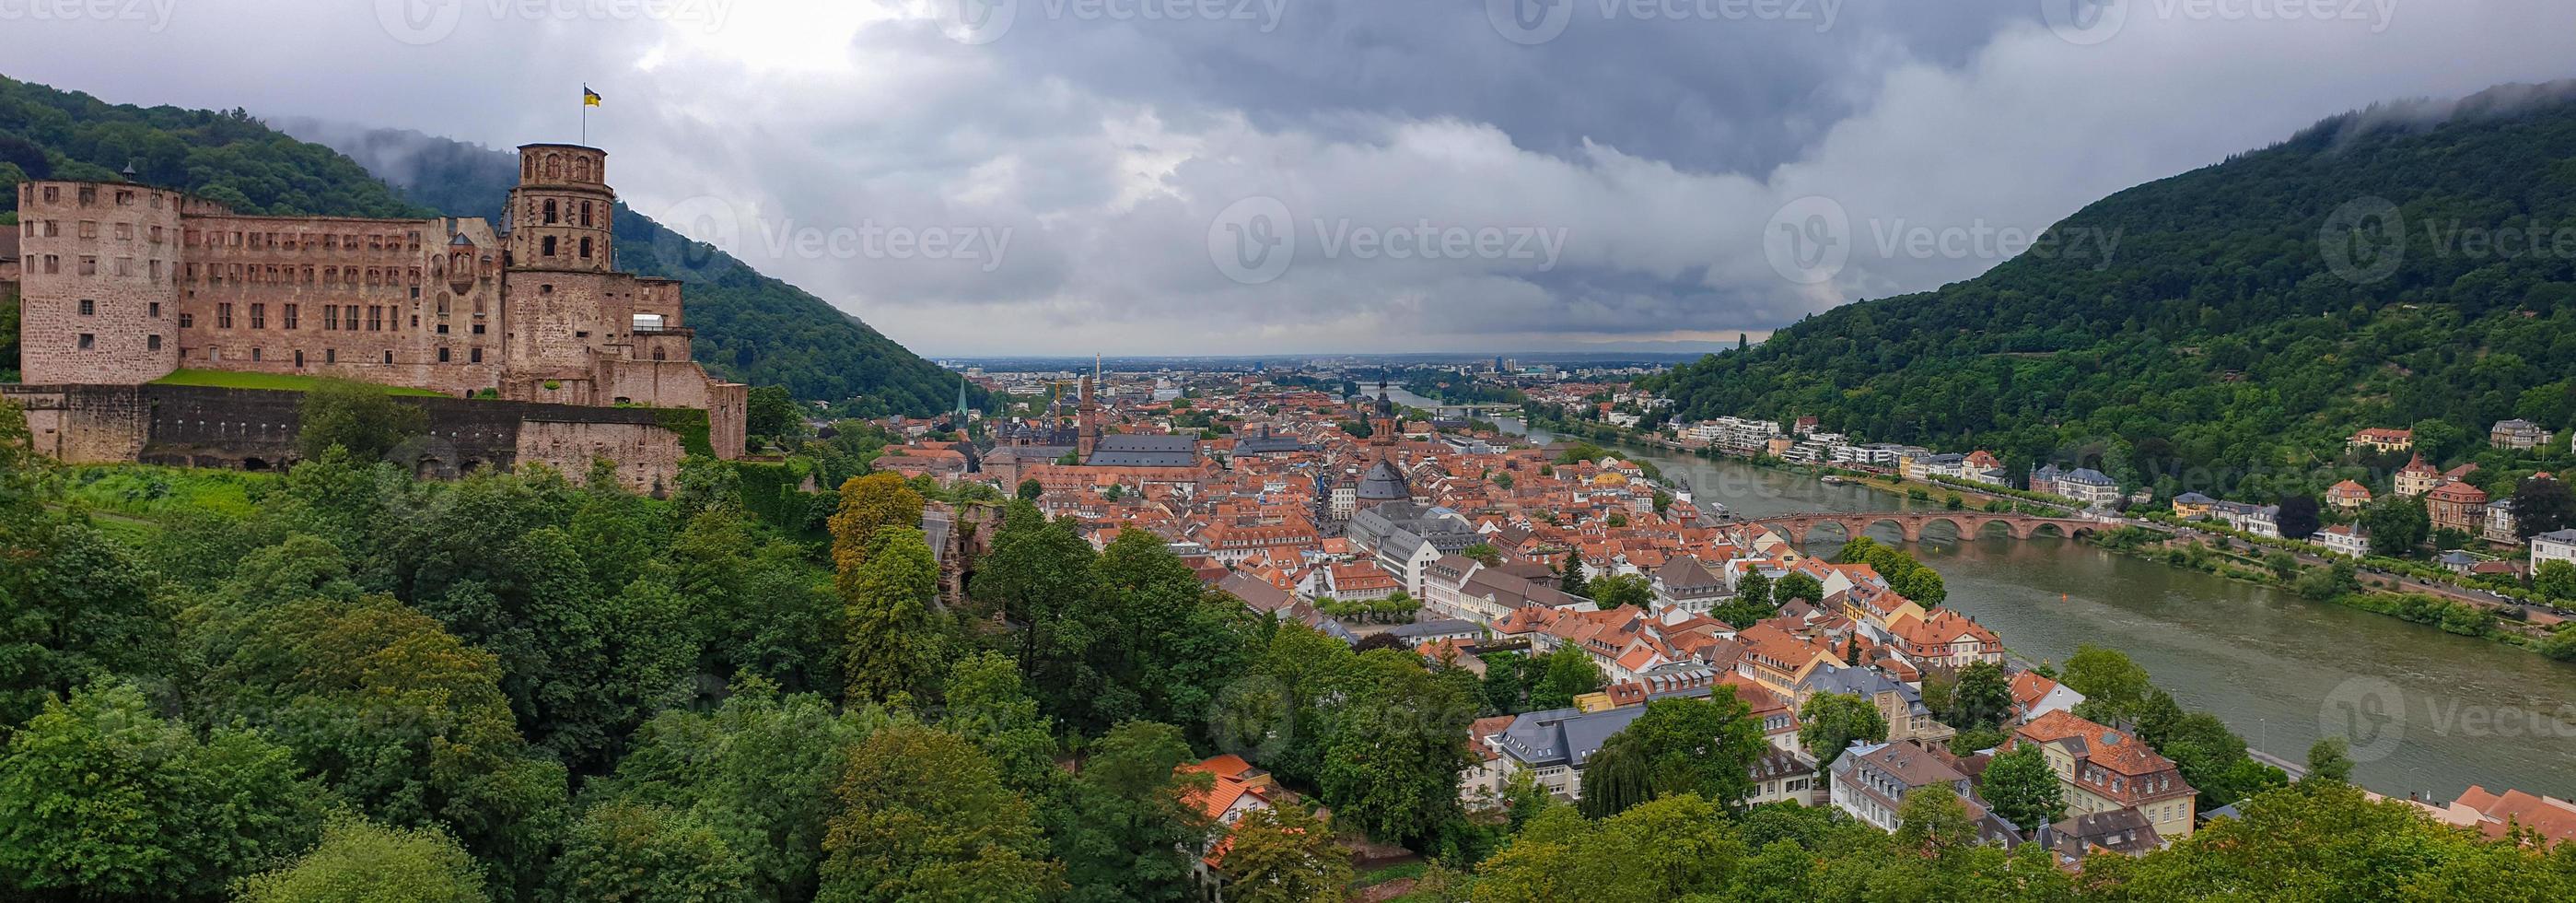 Panorama des Heidelberger Schlosses und der mittelalterlichen Stadt Heidelberg, Deutschland foto